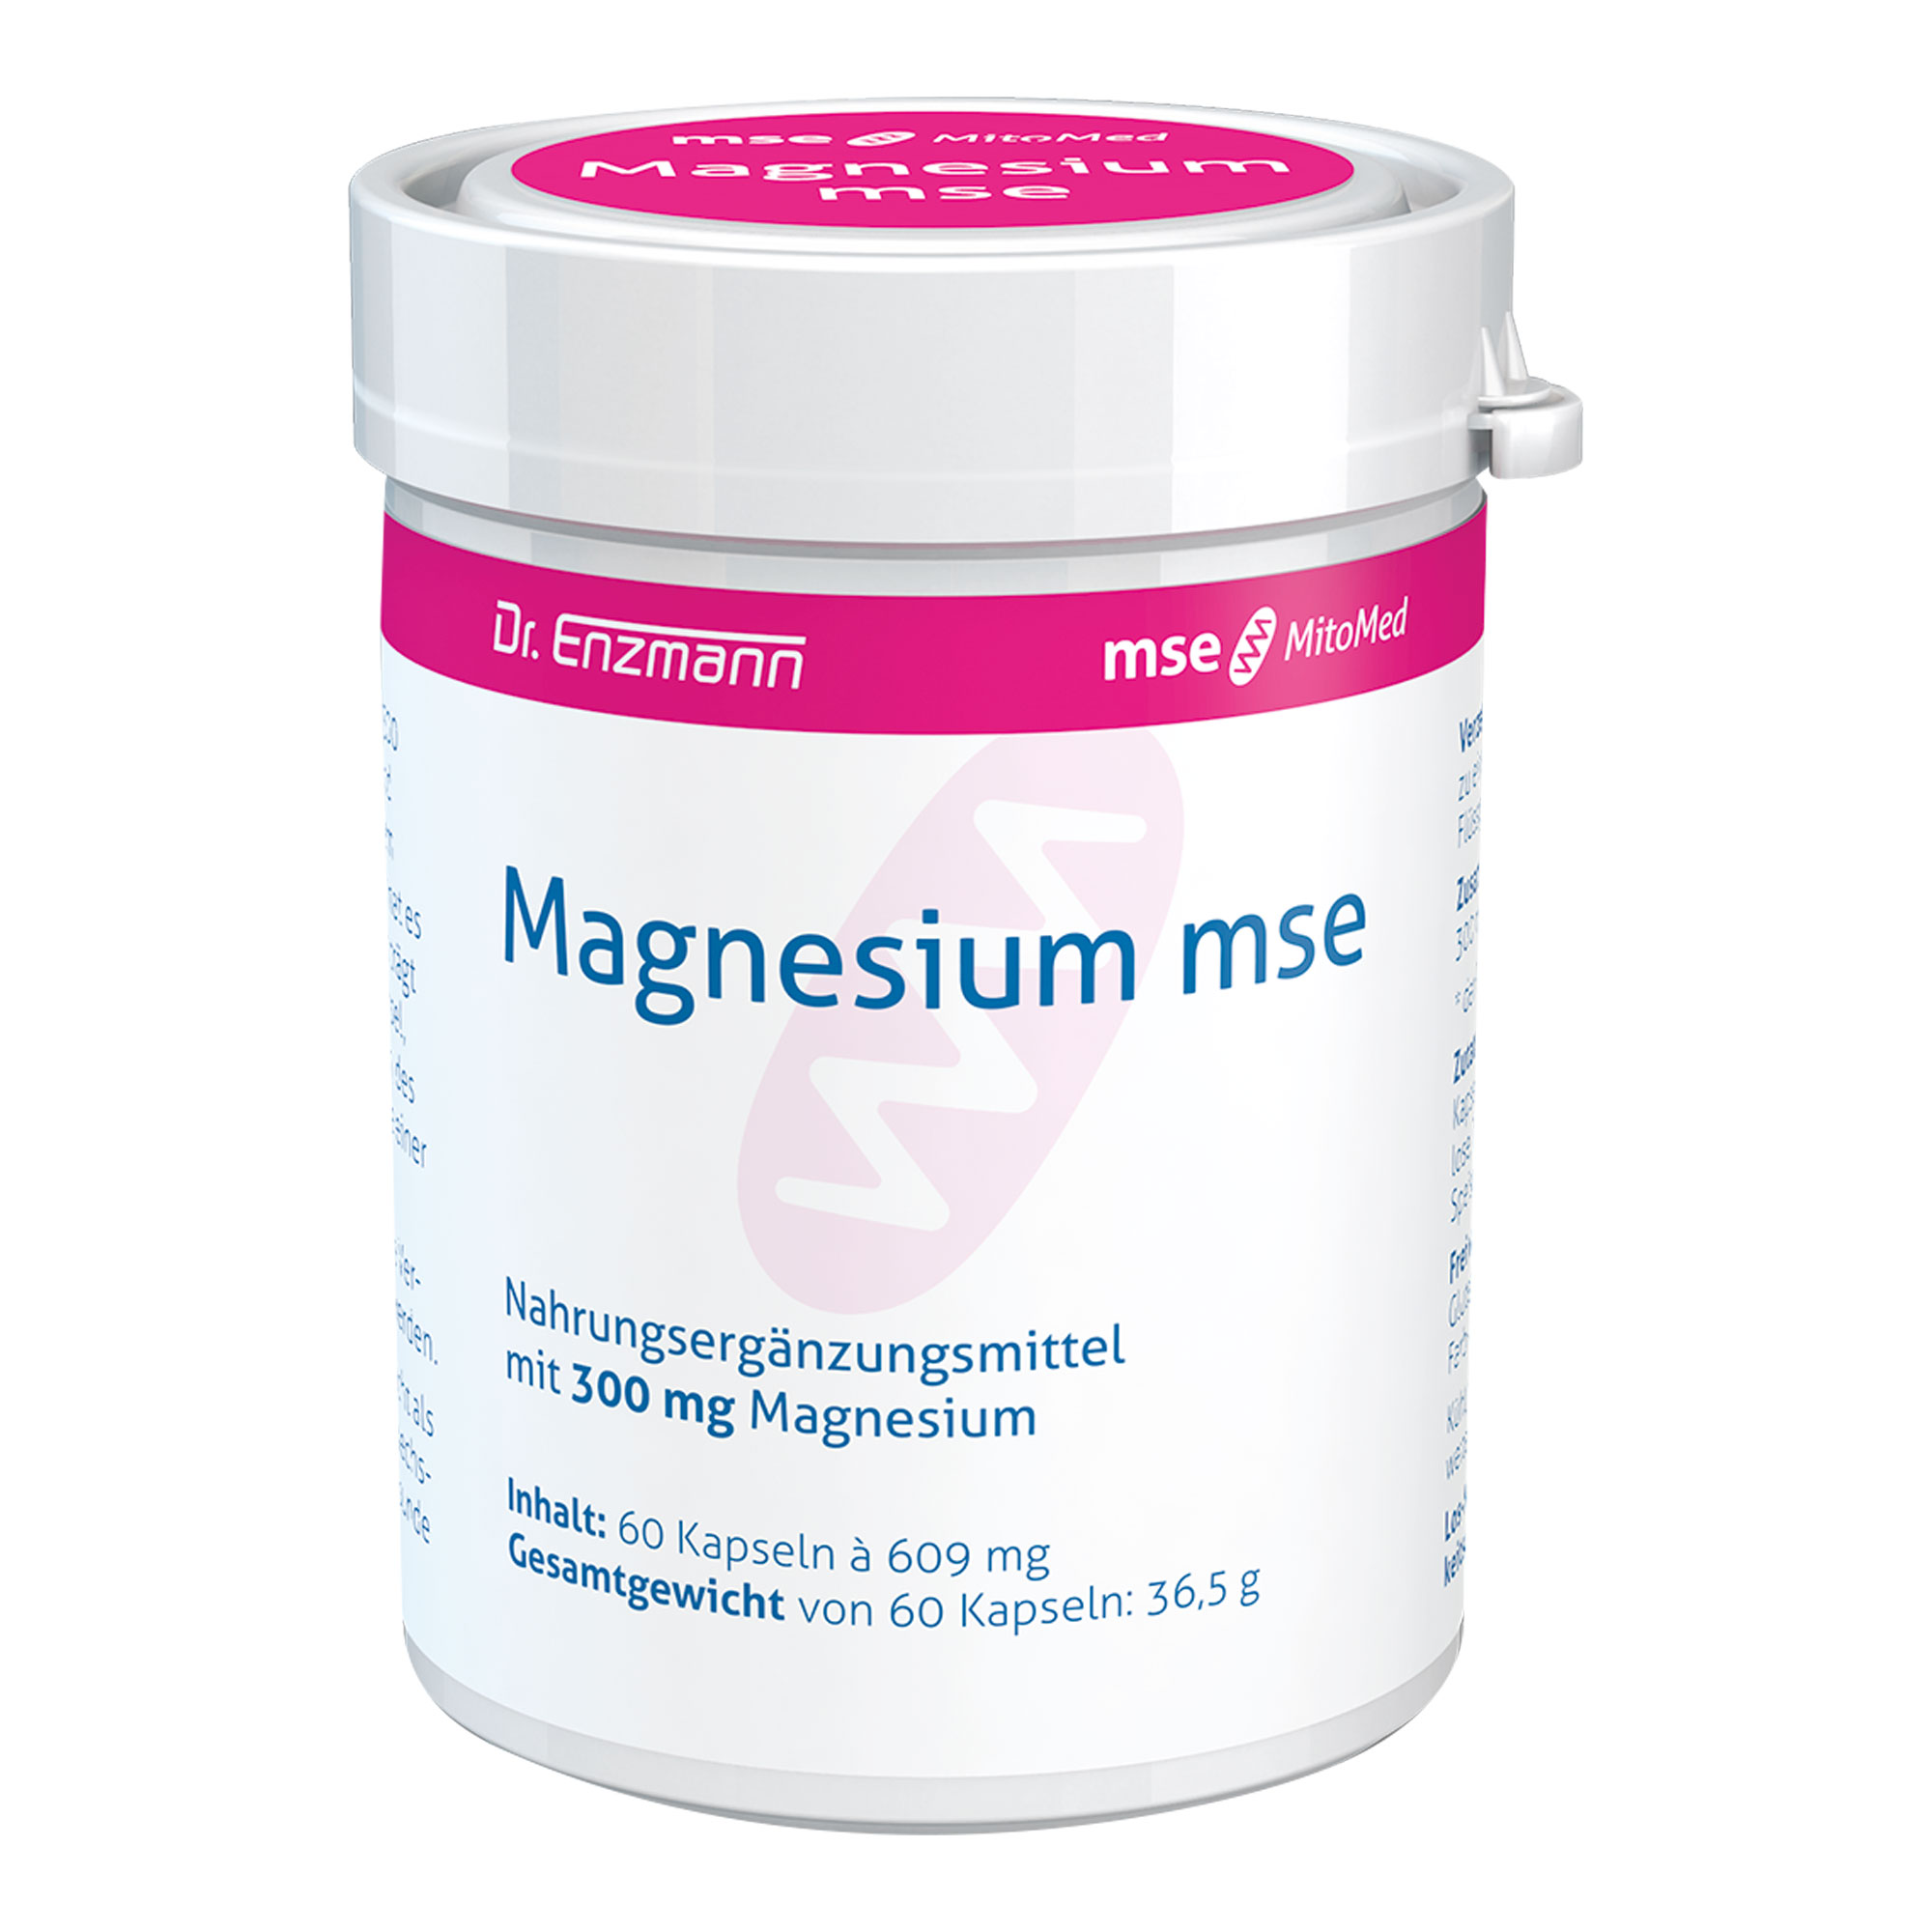 Enthält 300 mg Magnesium als Magnesiumoxid pro Kapsel.